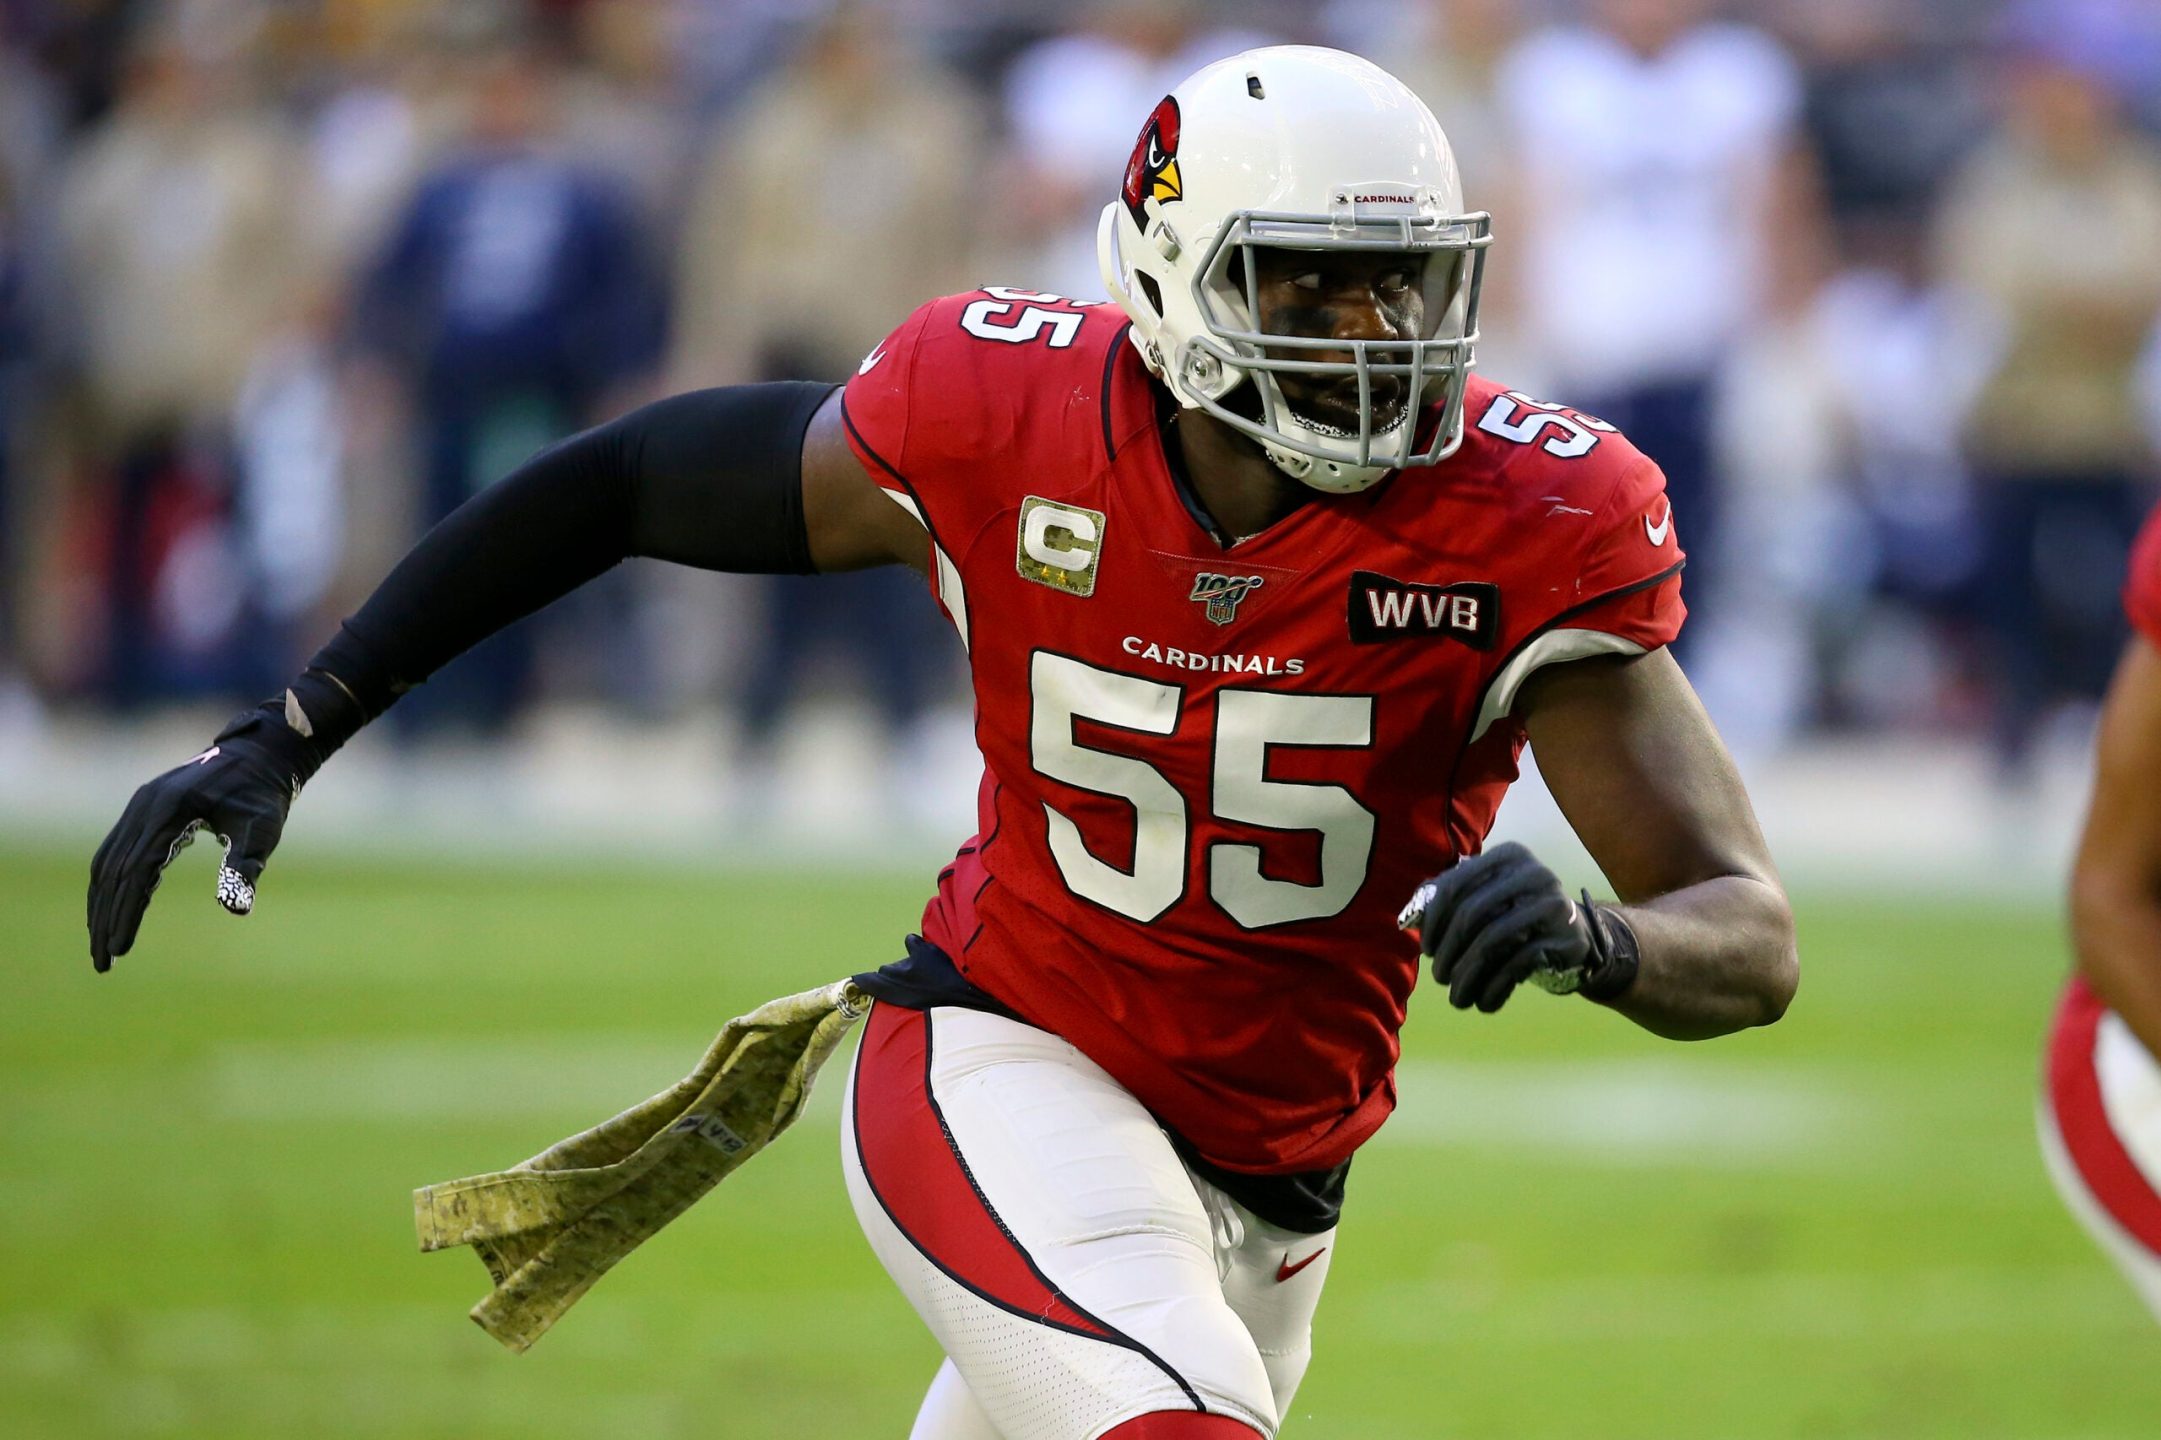 NFL: David Onyemata signs $35M deal with Atlanta Falcons